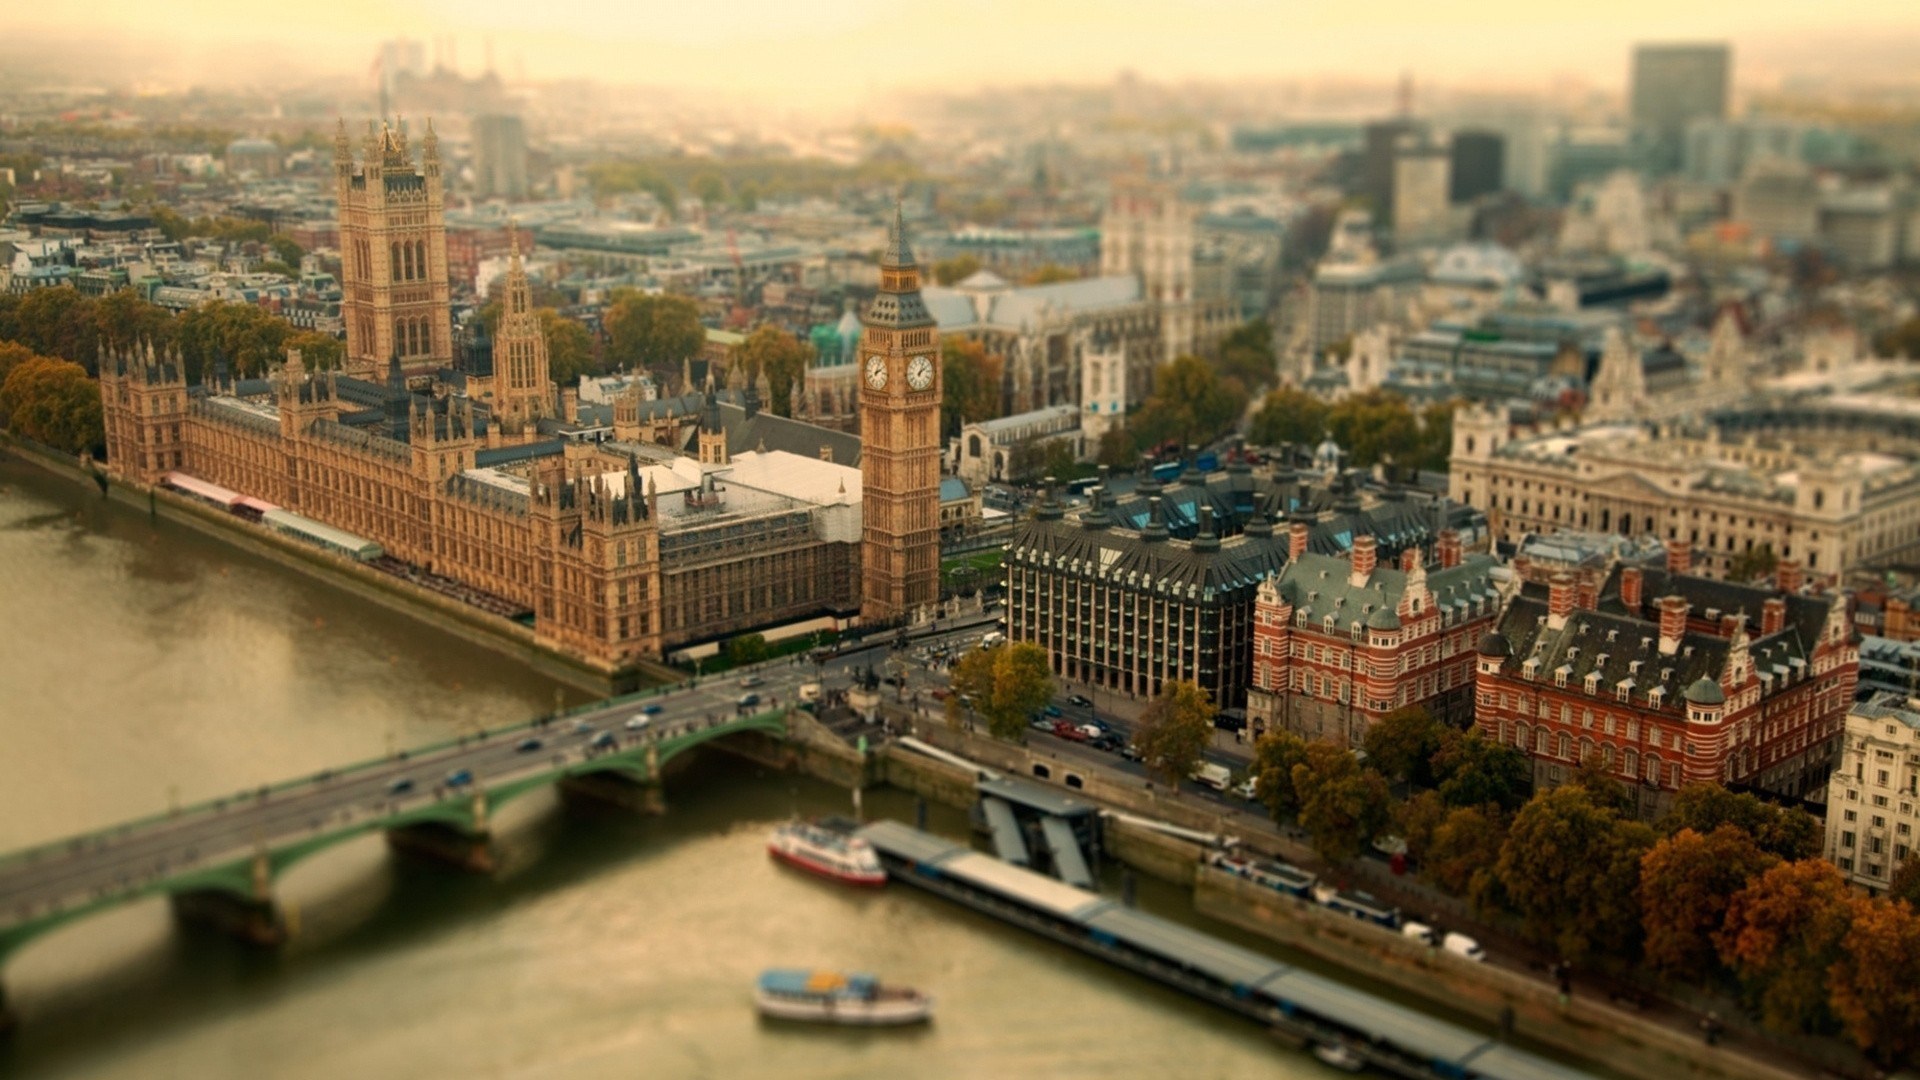 イギリスの壁紙,首都圏,市,都市の景観,市街地,空中写真